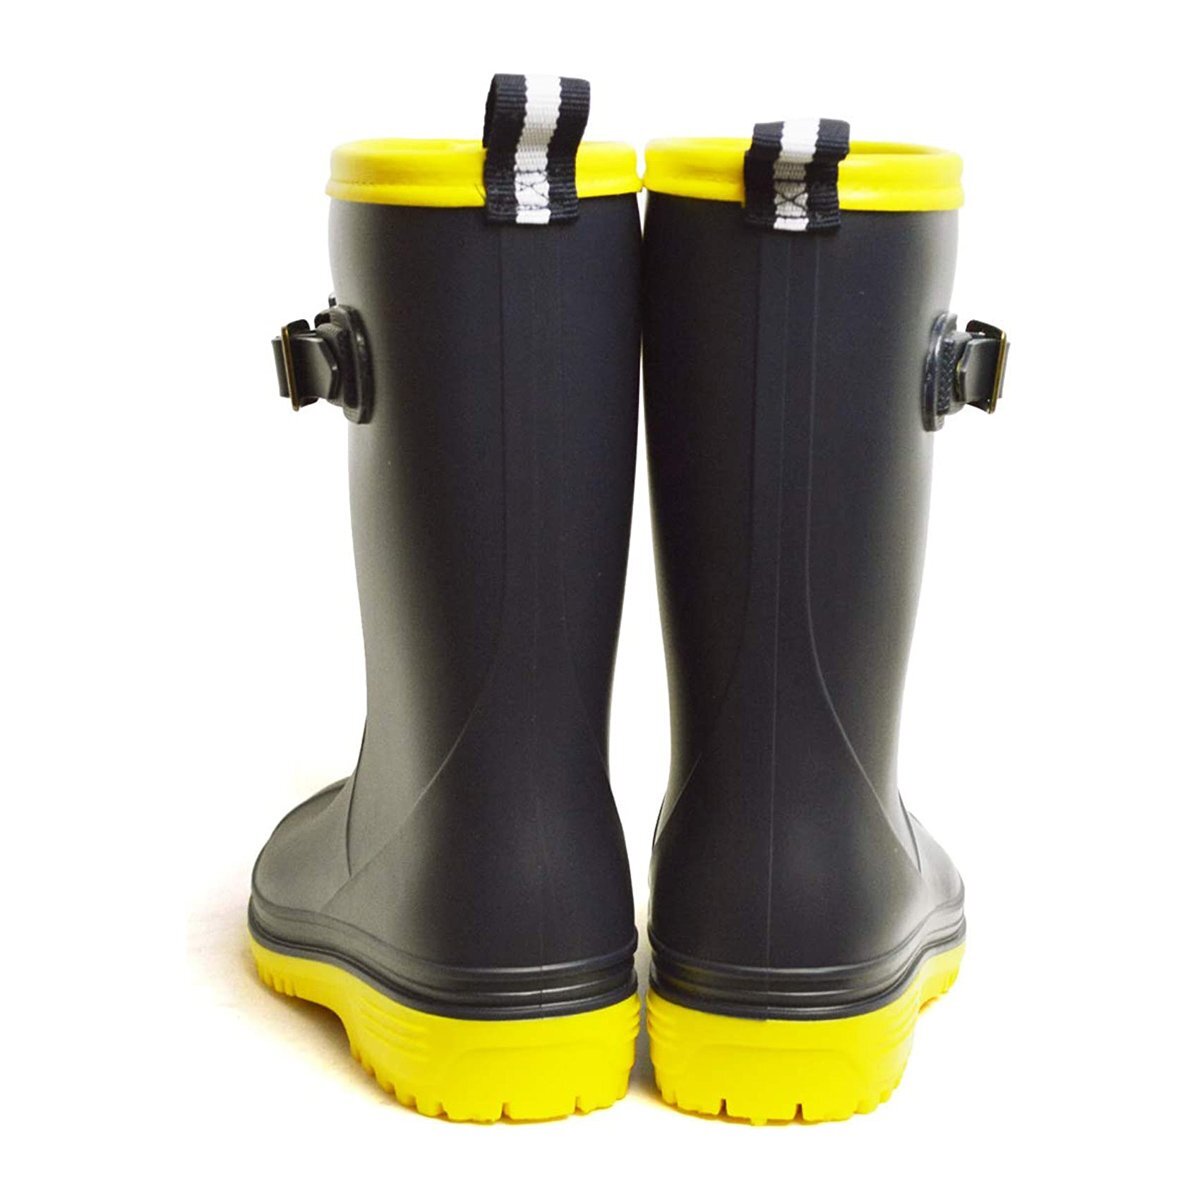  новый товар ■19cm  детский   дождь   ботинки   водонепроницаемый   обувь   ... обувь   легкий (по весу)   резина  ... вода  ... ... ключ  ботинки   простой   подросток   ребенок   дождь   обувь   модный  